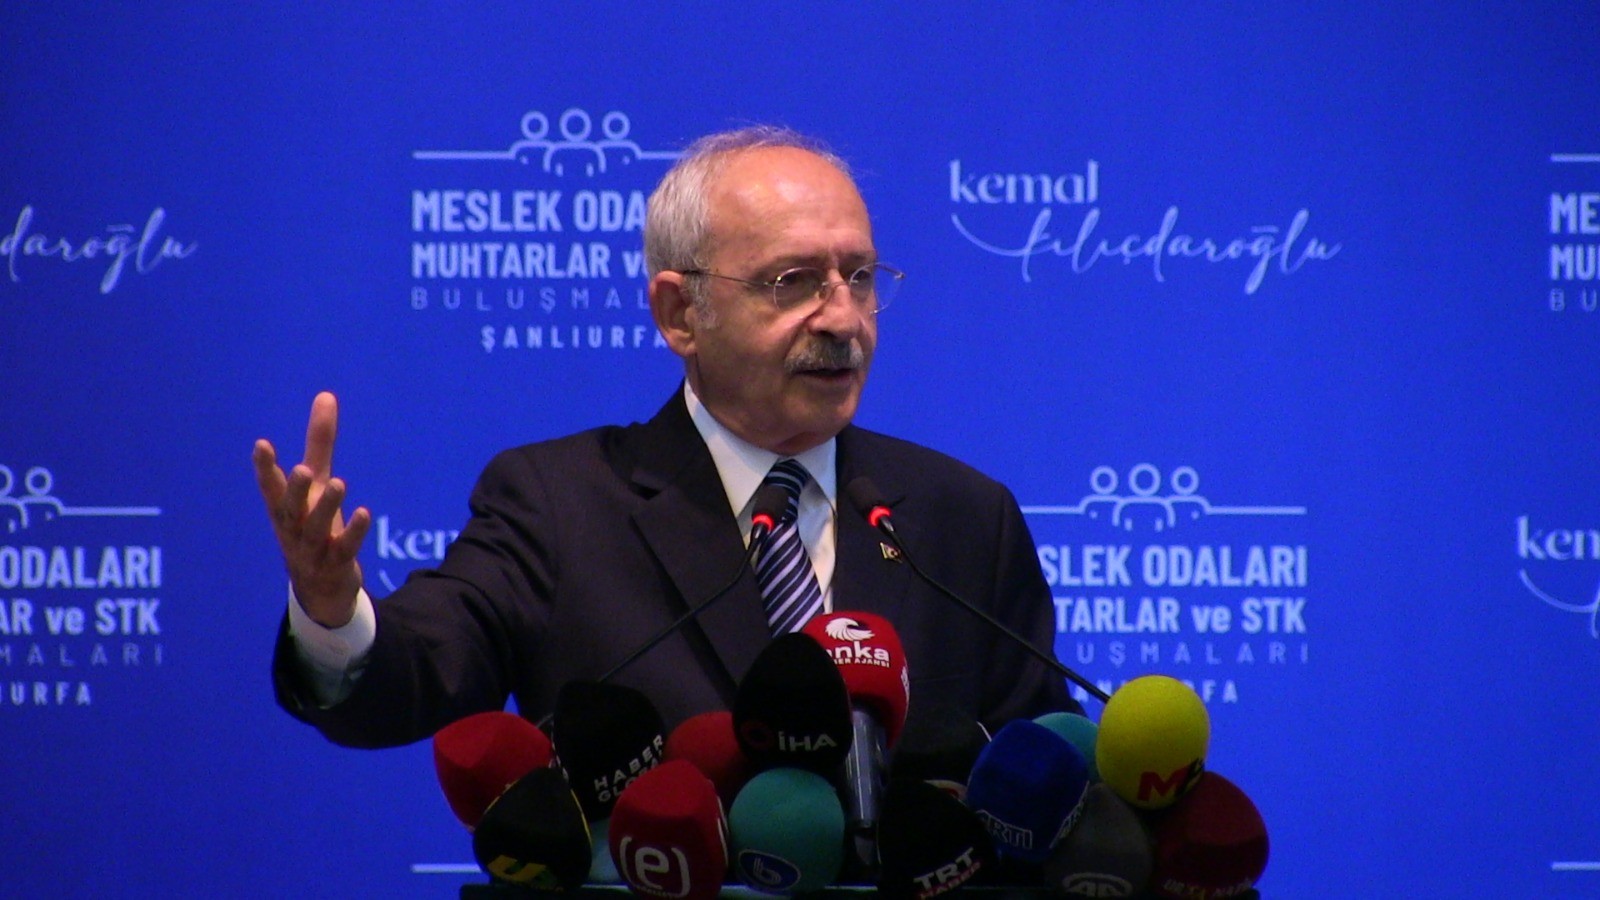 Kılıçdaroğlu, Urfa'daki bedava elektrik vaadinin detaylarını anlattı;